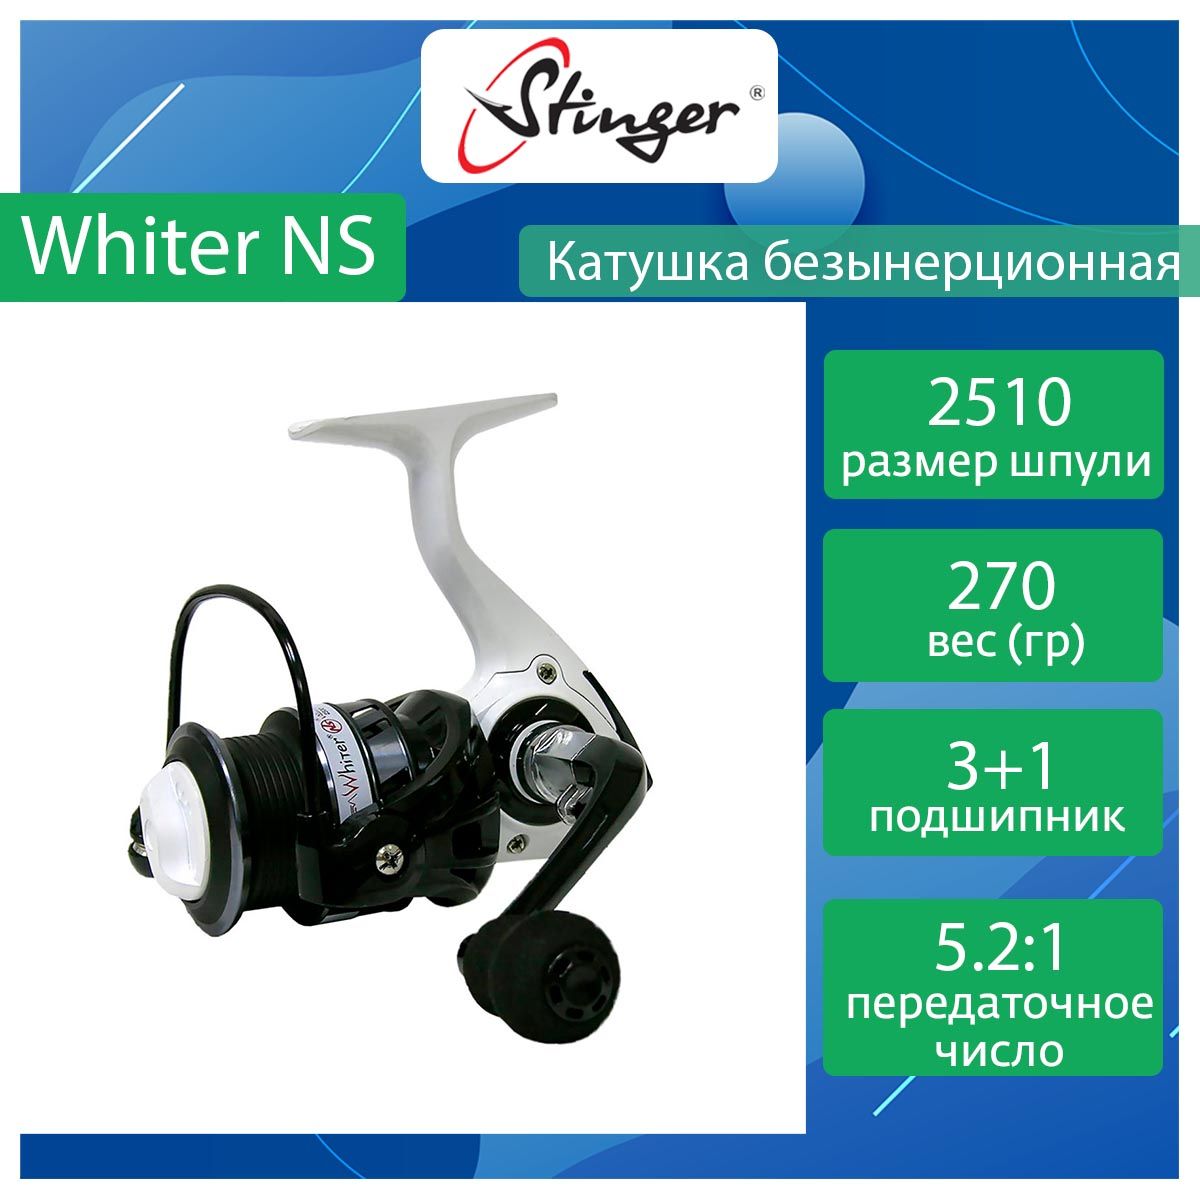 Катушка для рыбалки безынерционная Stinger Whiter NS ef56852